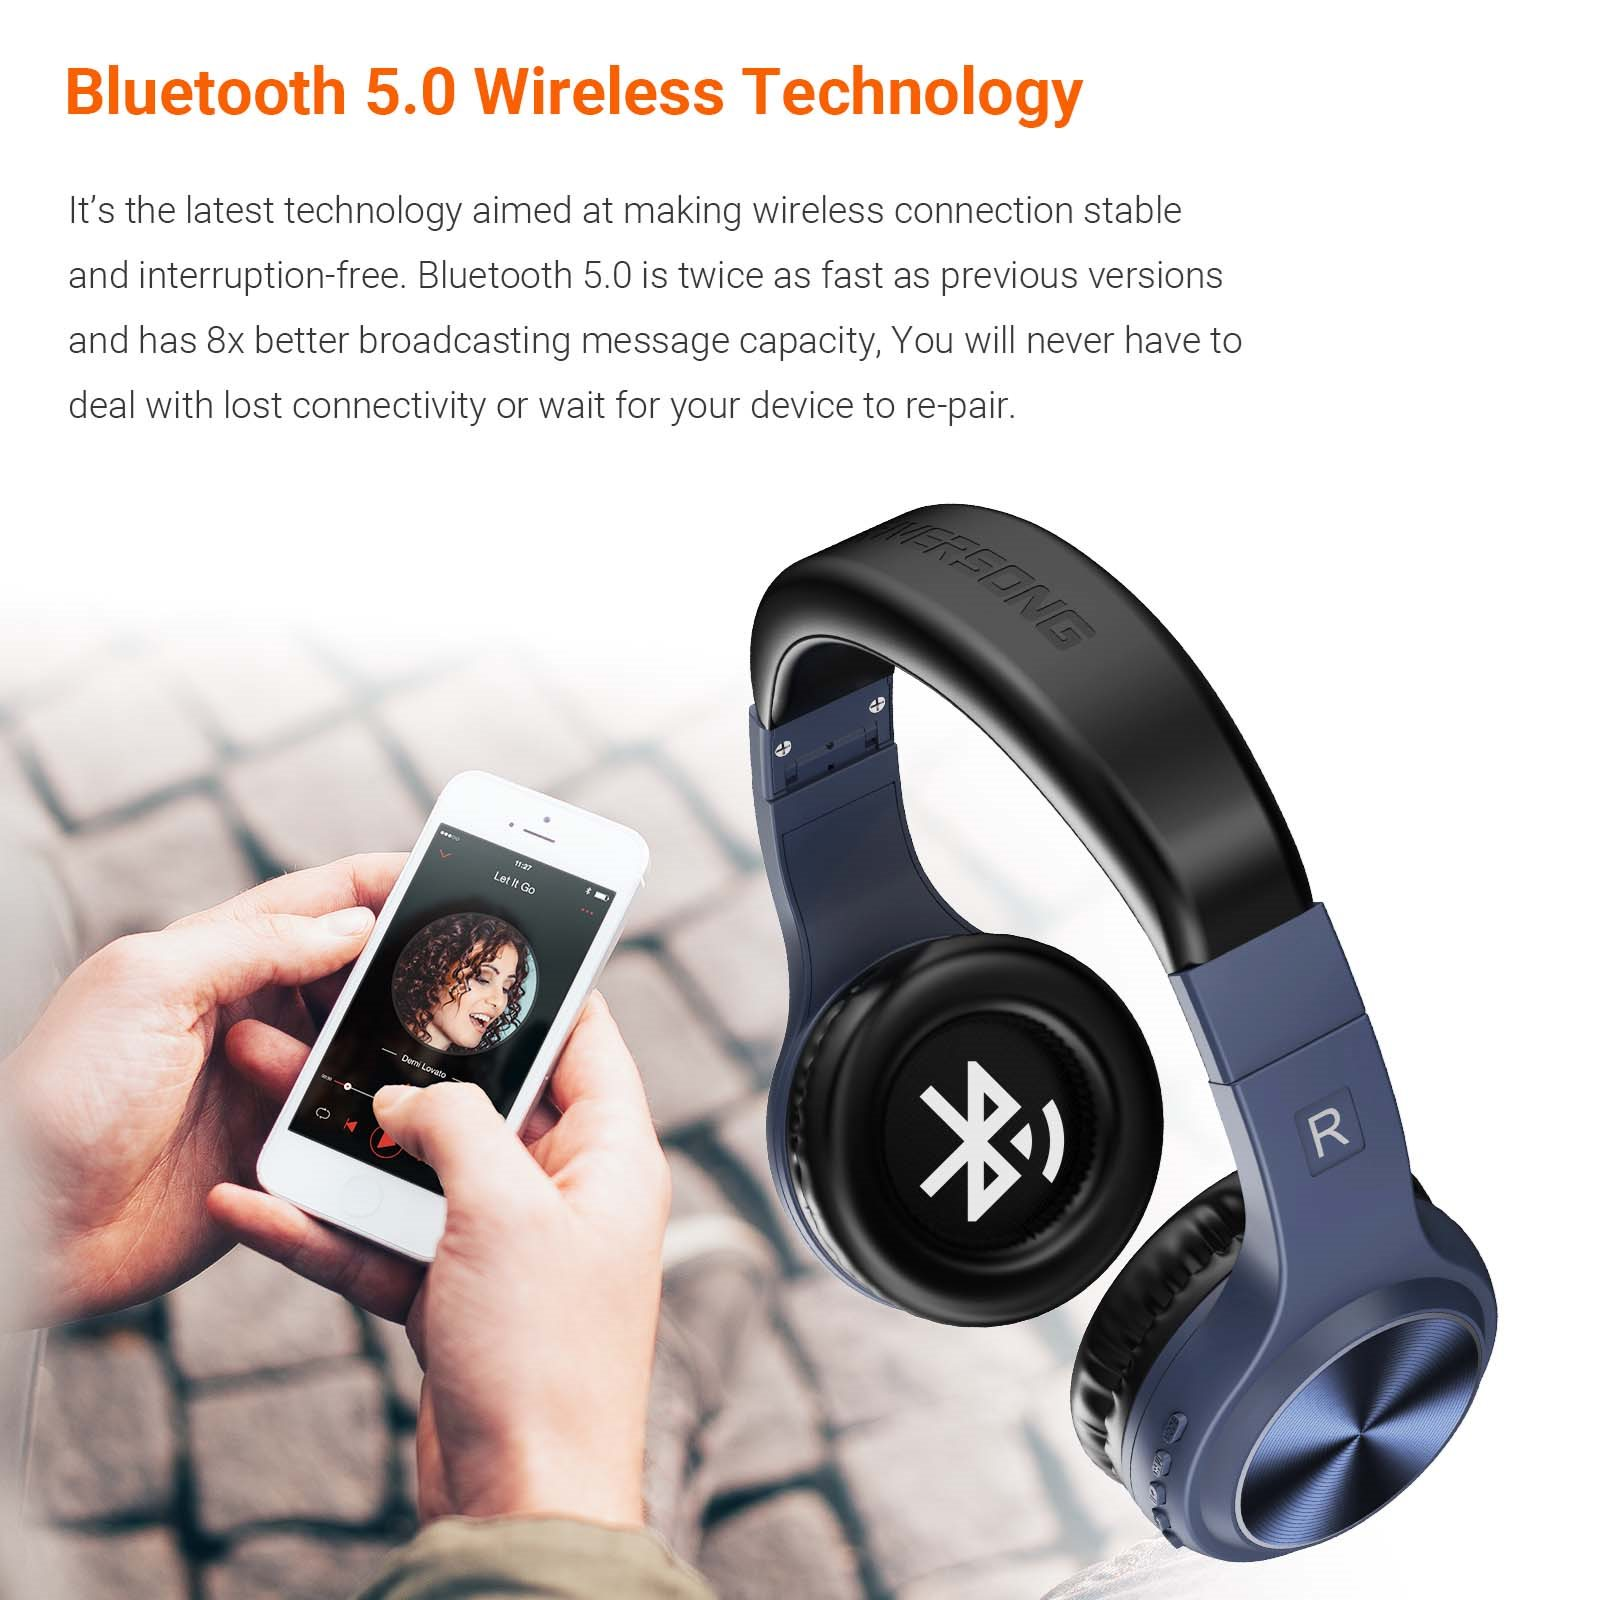 RIVERSONG RIVERSONG | Rhythm Stereokopfhörer Over Stereokopfhöhrer Bluetooth, sind Over verfügen Ear über Ear schwarz kabellos und L Bluetooth Over-ear